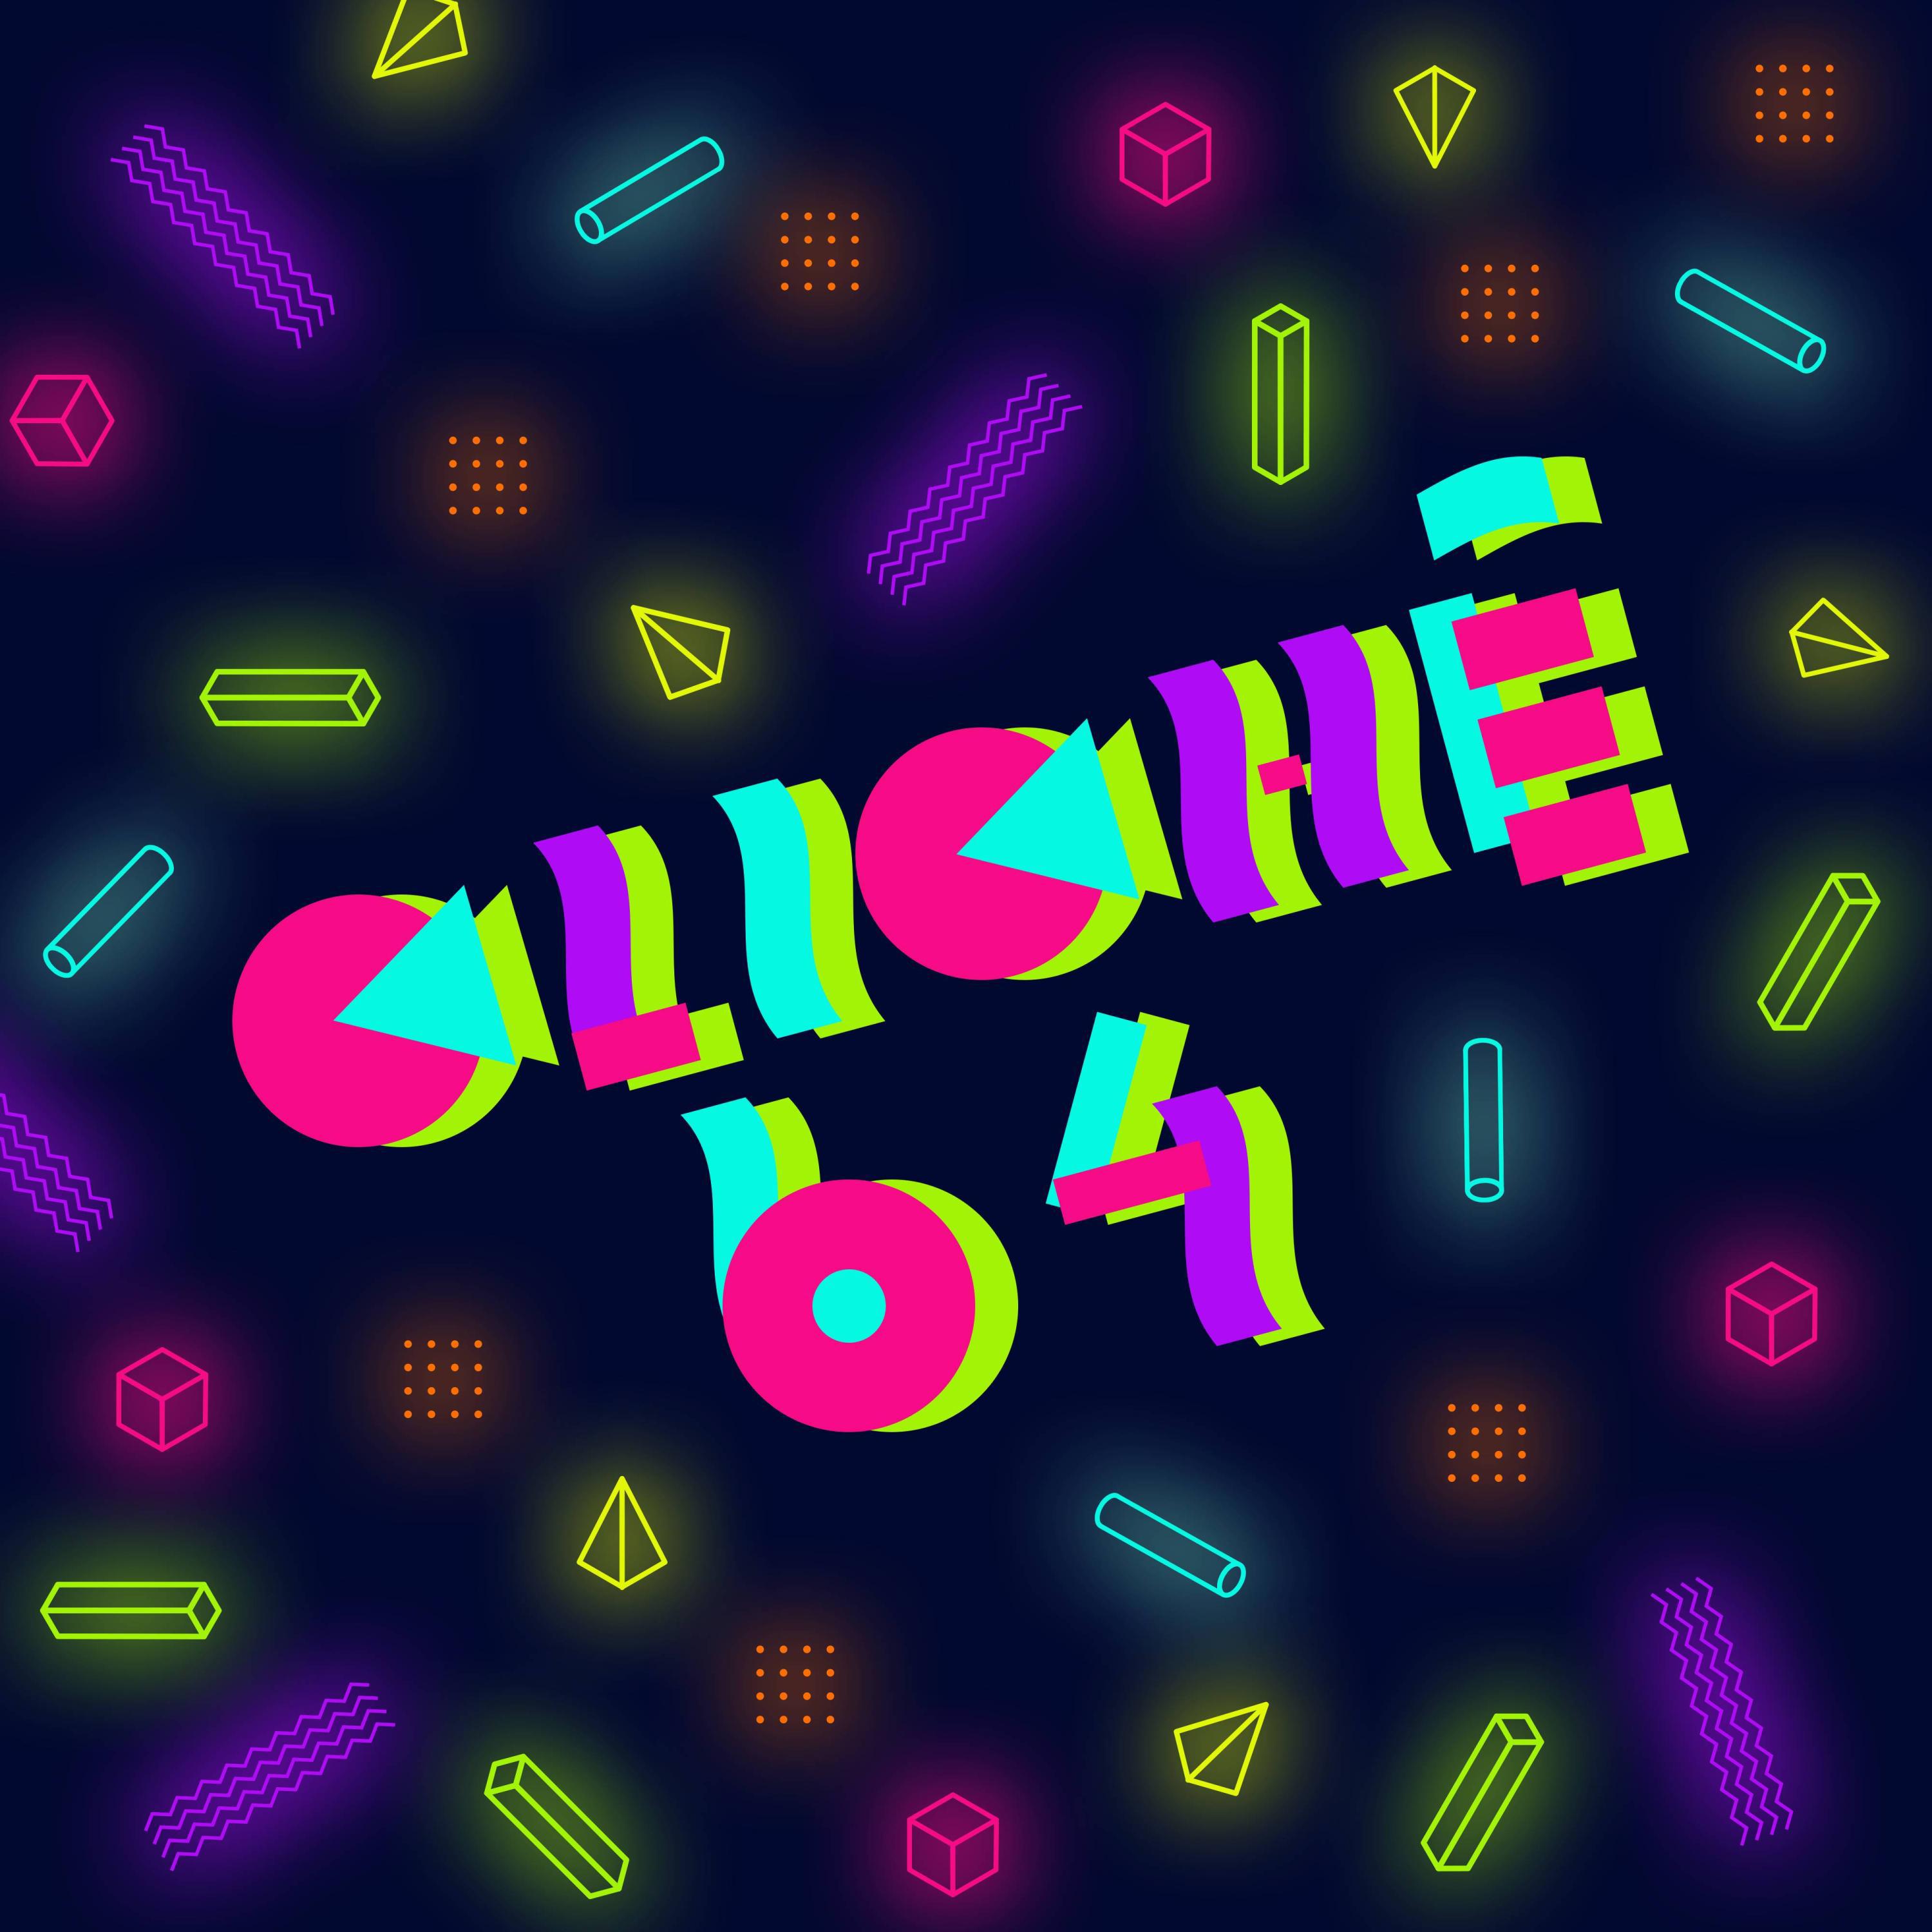 Cliché64 - Bolo Circuit